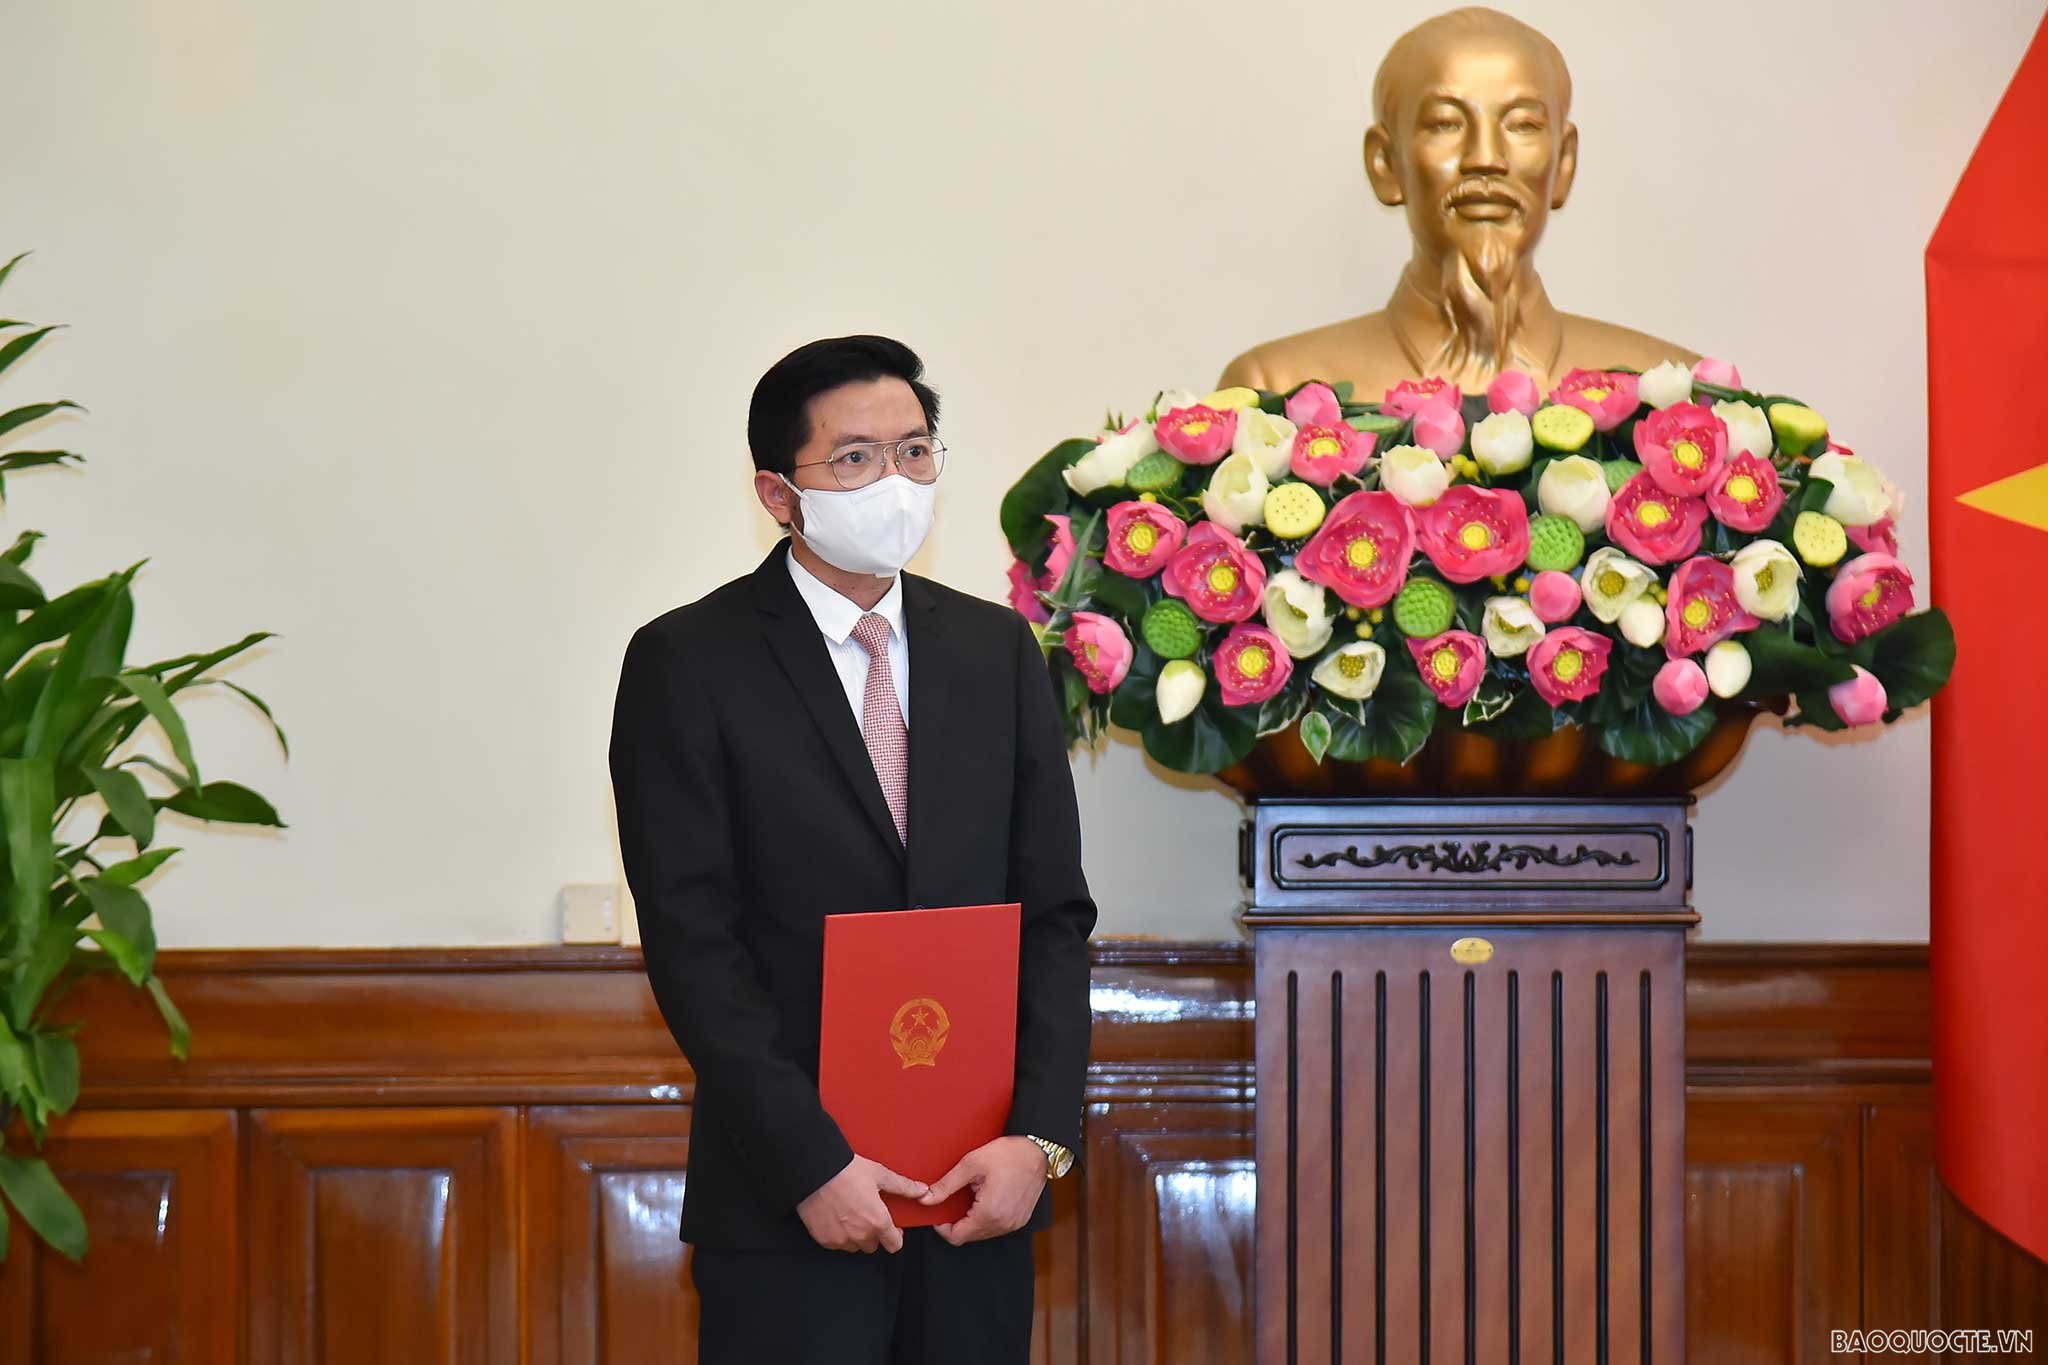 Bộ trưởng Ngoại giao Bùi Thanh Sơn trao quyết định điều động Vụ trưởng và bổ nhiệm Tổng Lãnh sự